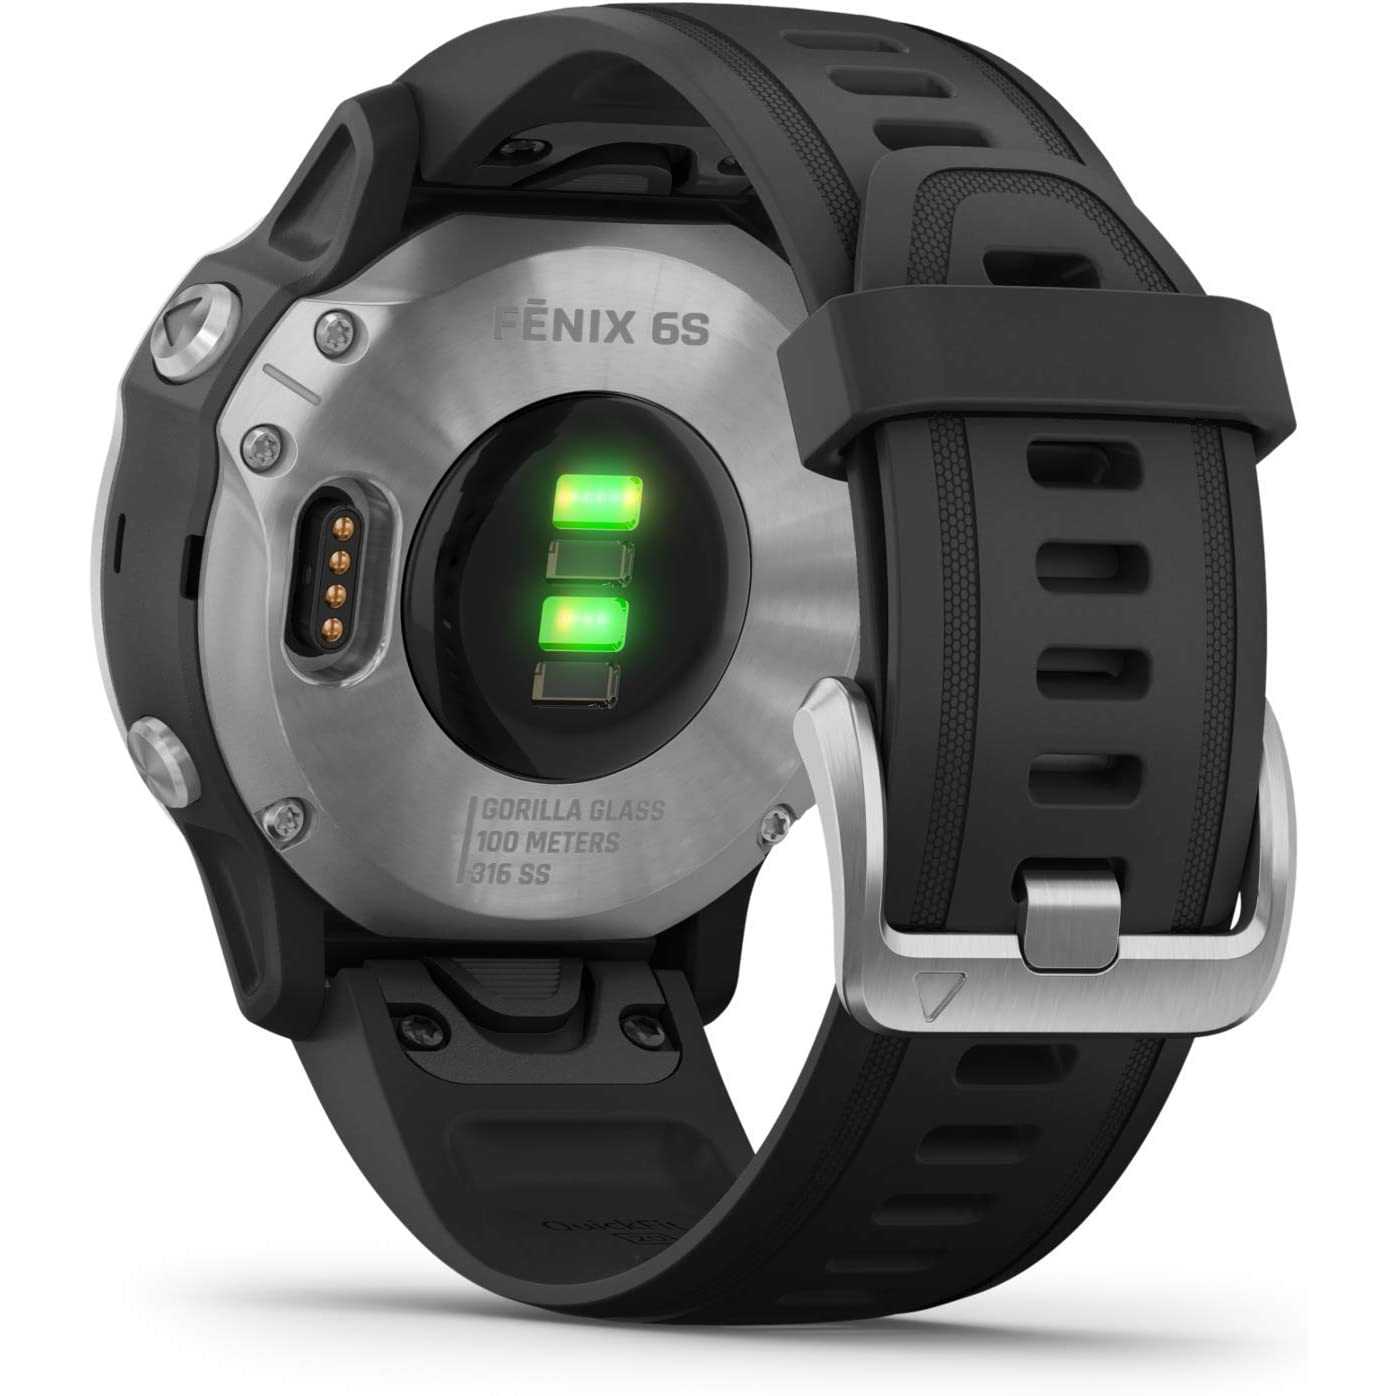 Garmin Fenix 6S - GPS Smartwatch Multisport 42mm, Display 1,2”, HR e saturazione ossigeno al polso, Pagamento contactless Garmin Pay, Colore Nero/Siver fēnix 6S Silver & Black 42 mm